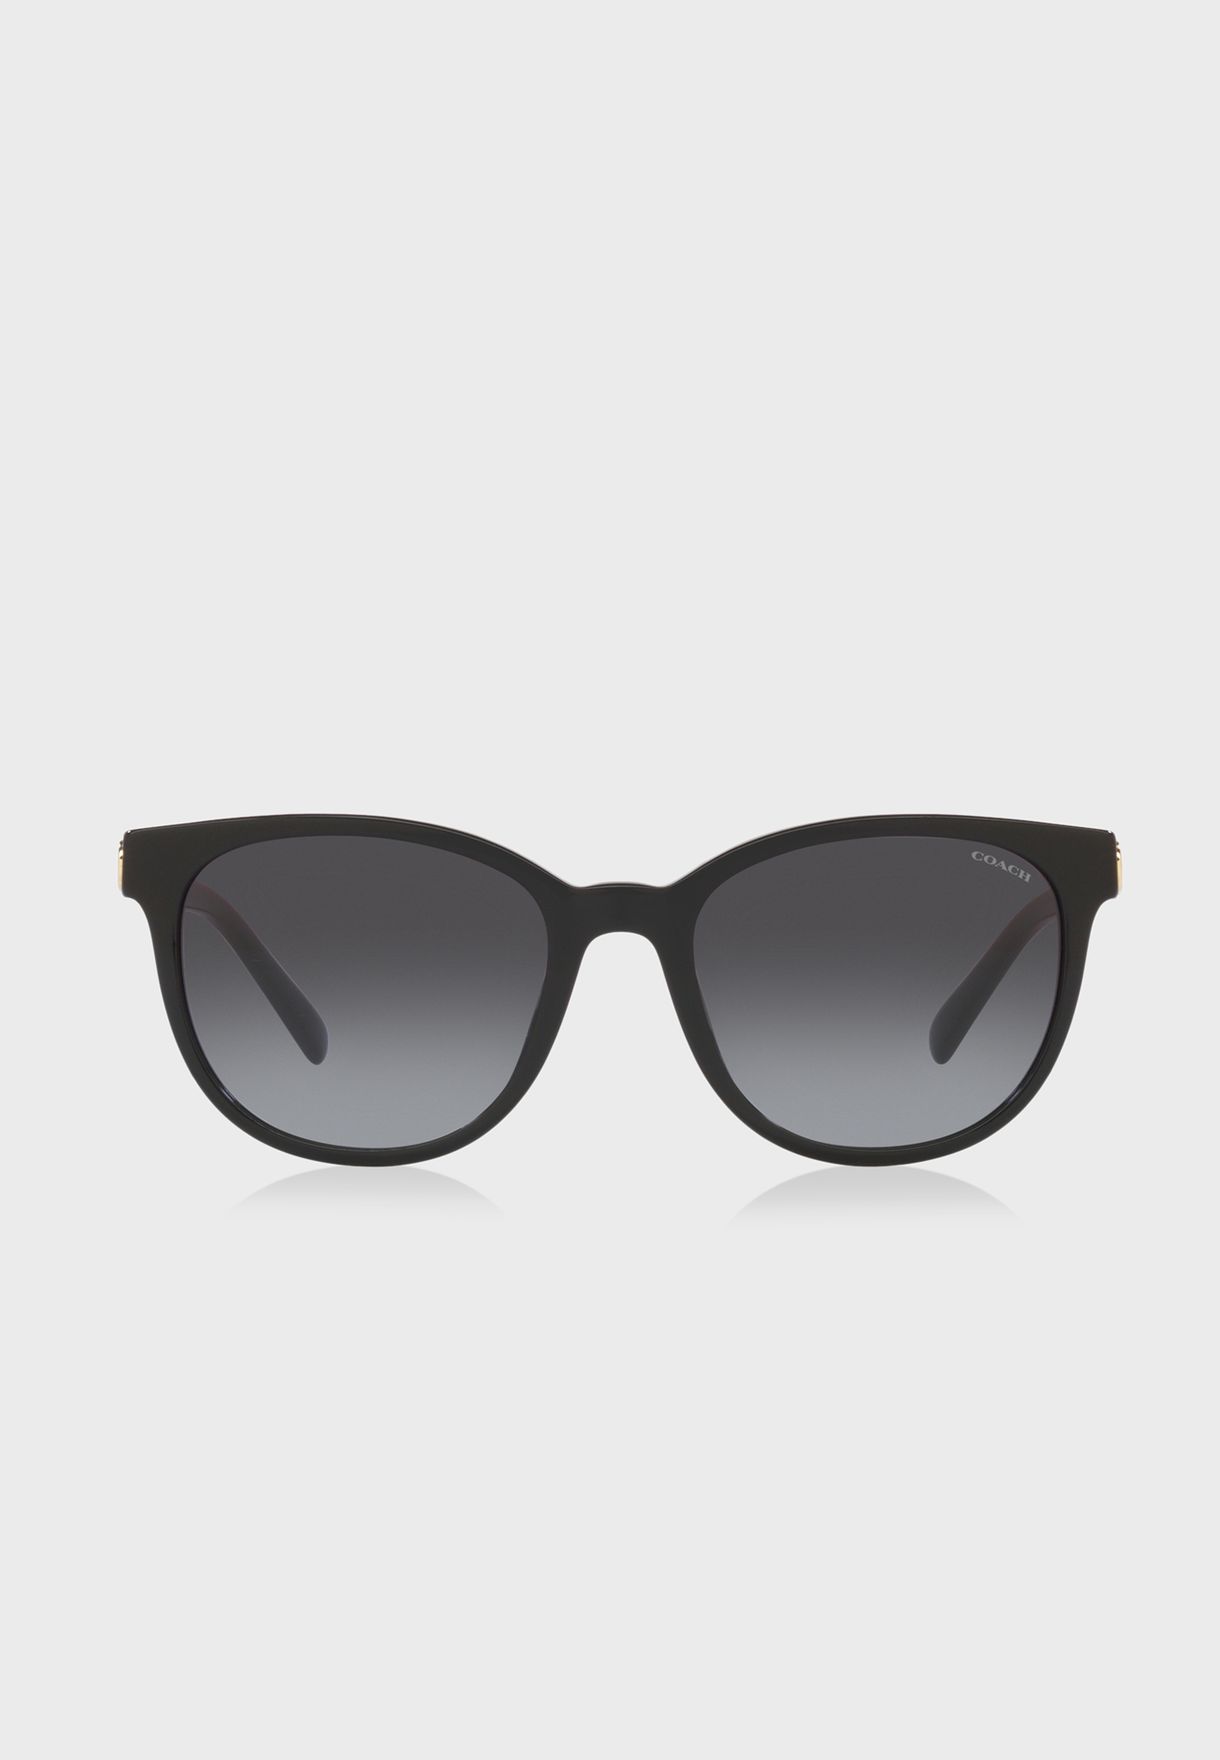 0Hc8350U Wayfarer Sunglasses